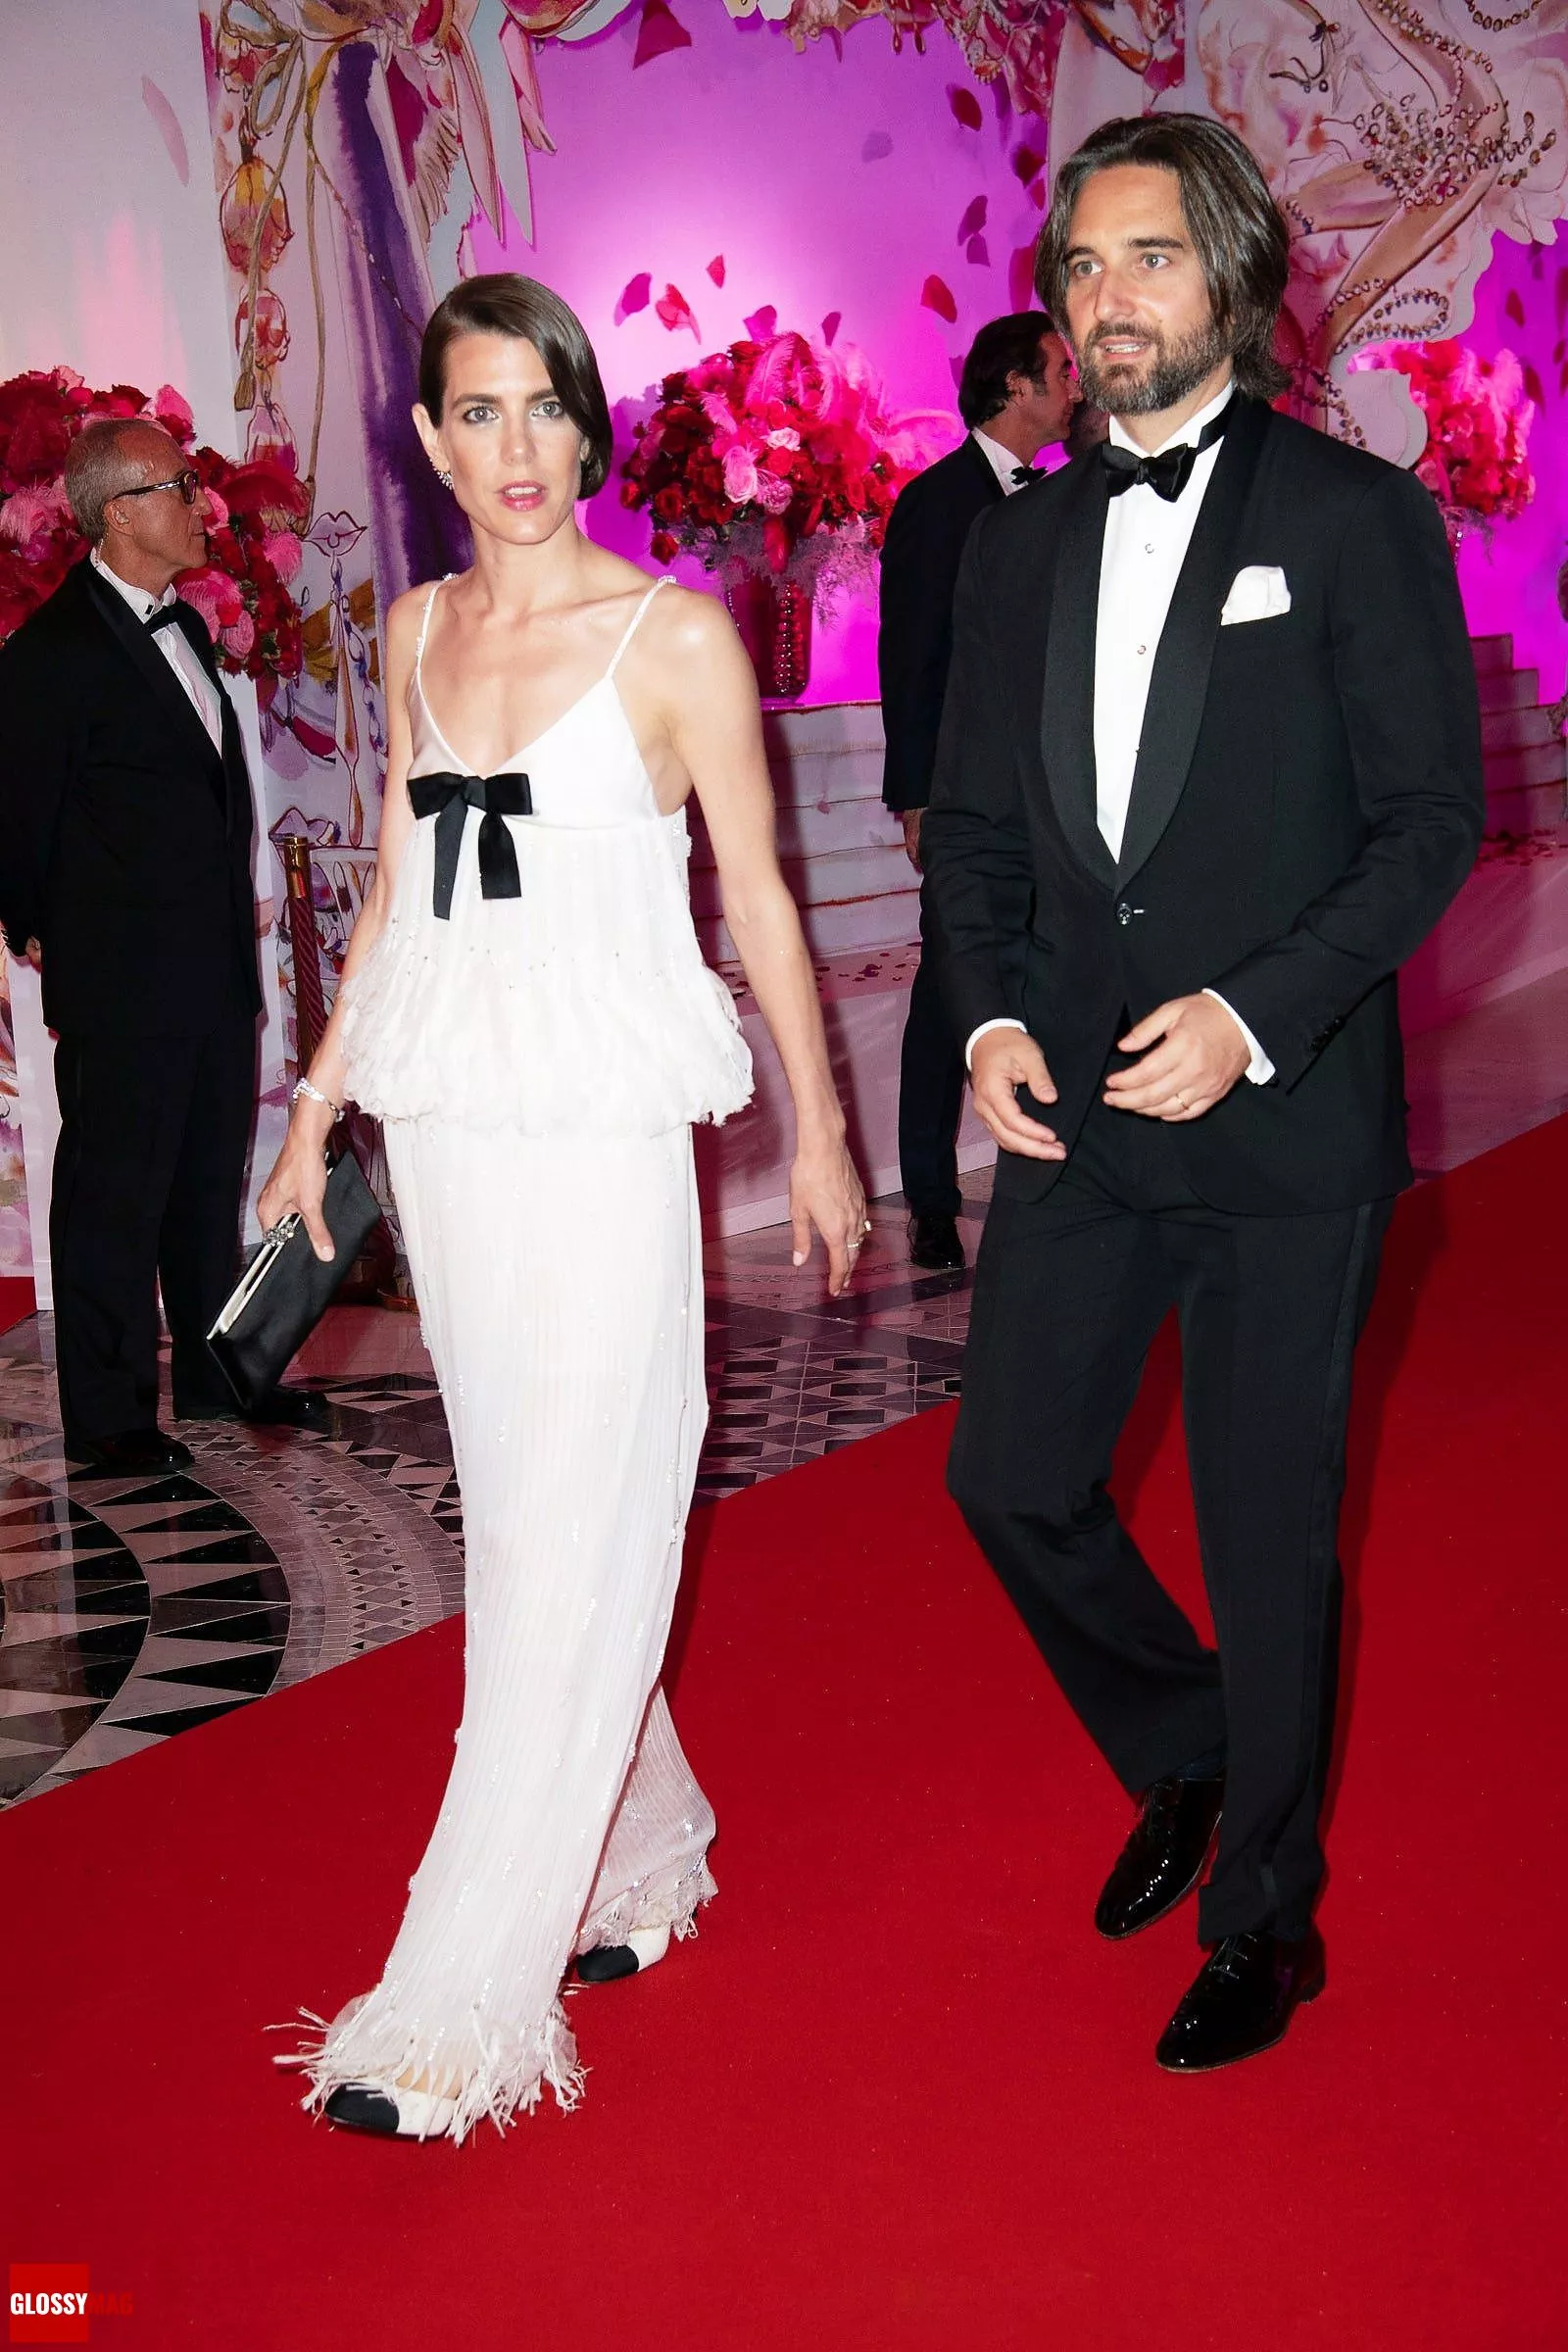 Шарлотта Казираги с мужем Дмитрием Рассамом на благотворительном мероприятии Бал Роз 2022 в Монако, 8 июля 2022 г.